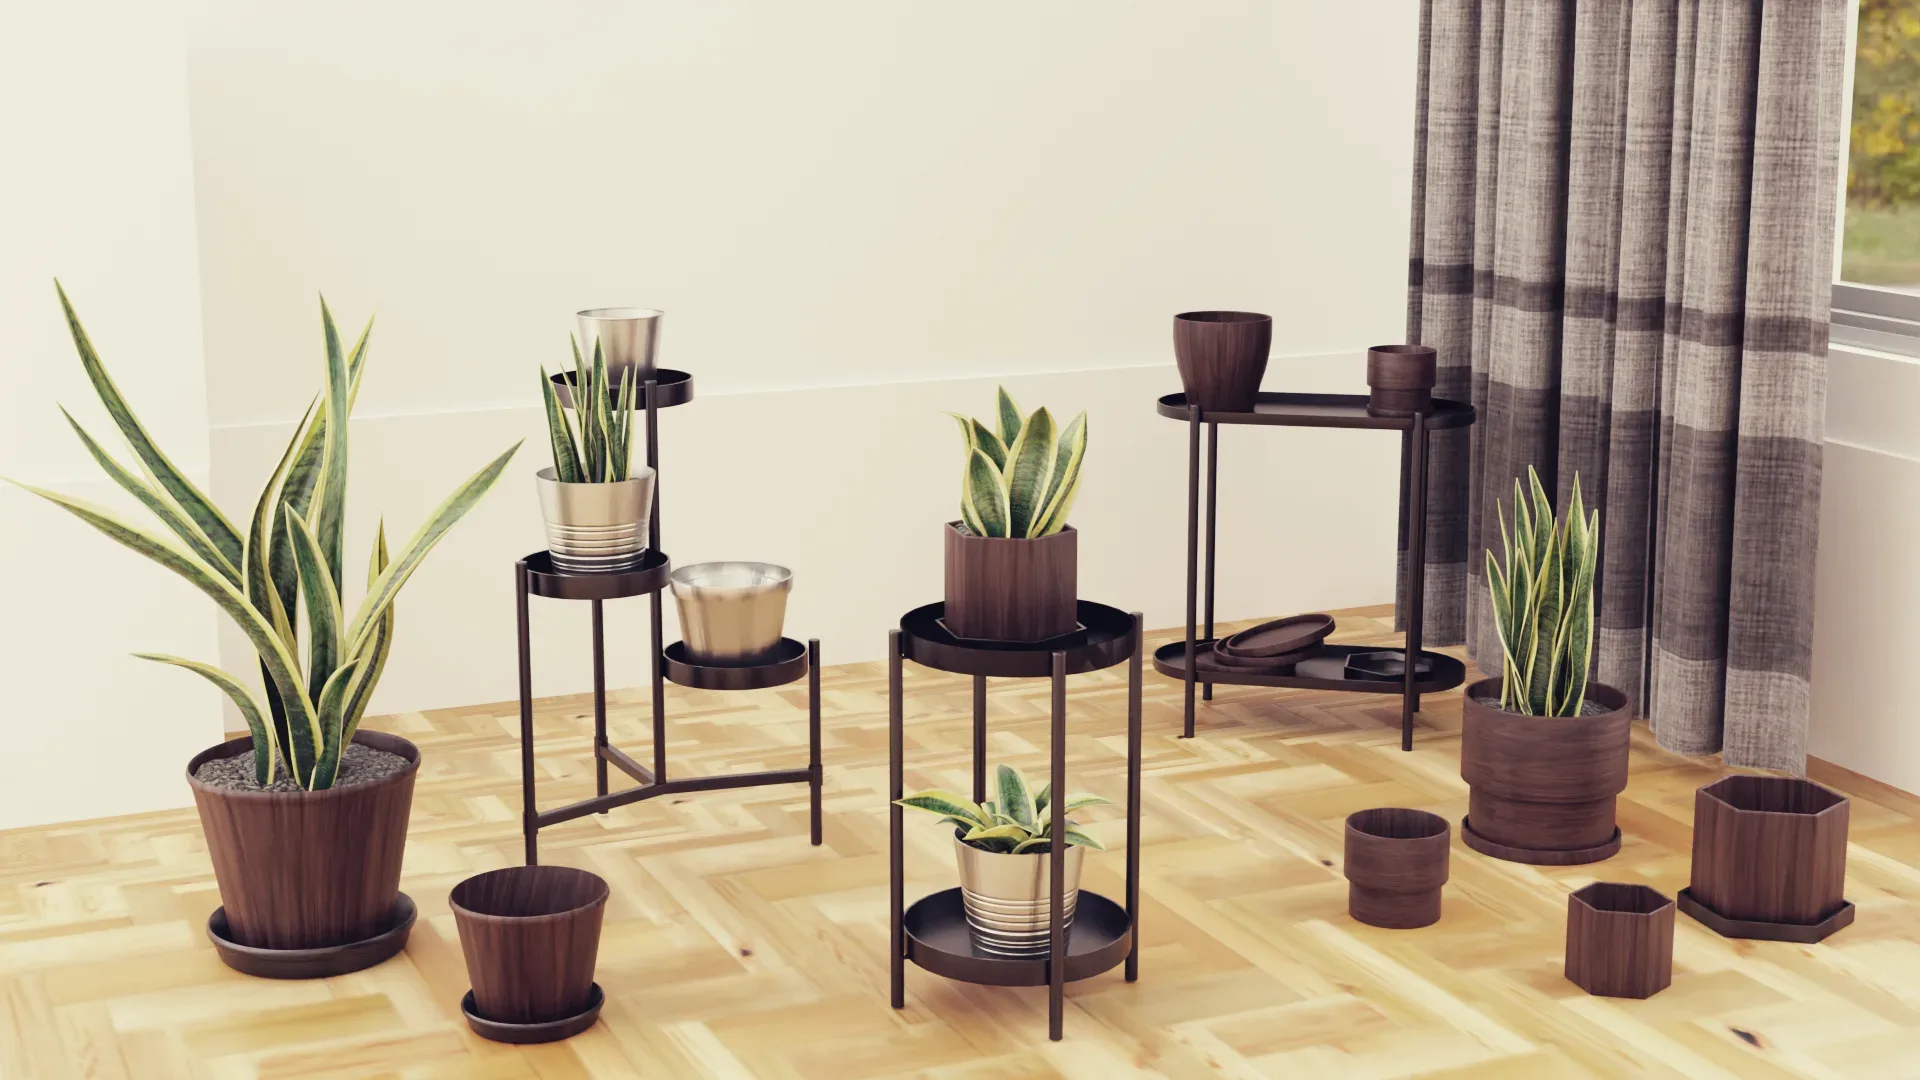 Plants pots collection vol 01